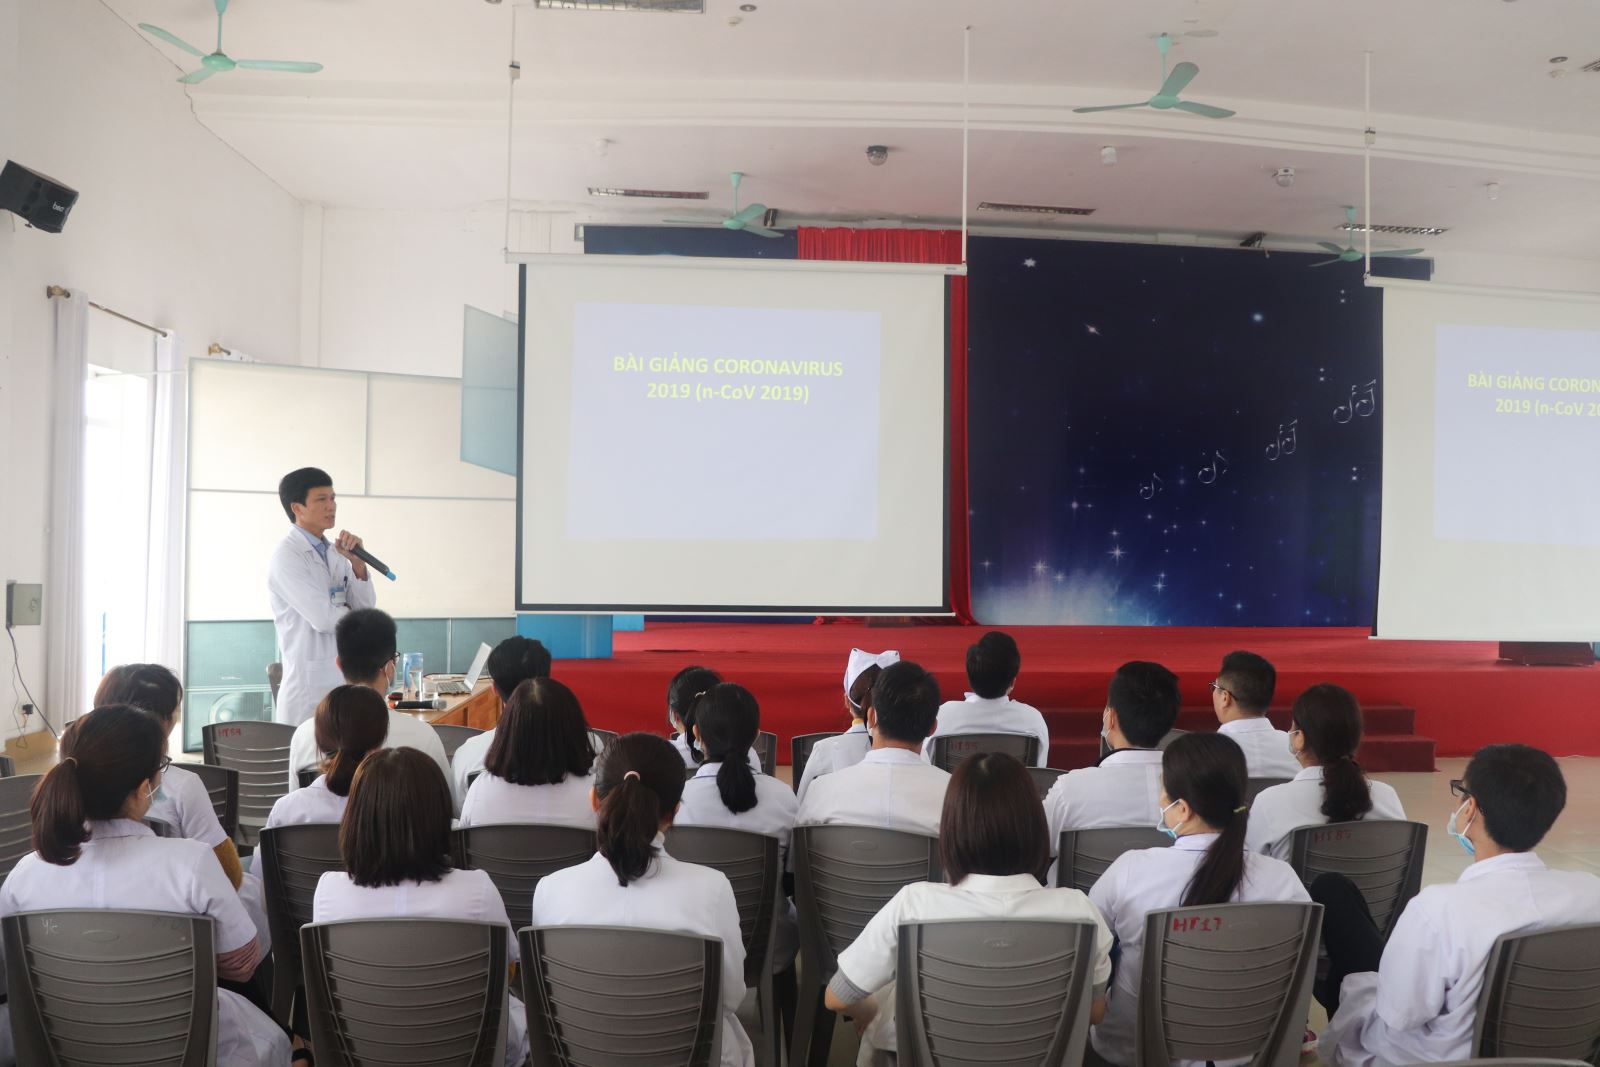 Thạc sỹ, Bác sỹ Nguyễn Tiến Vũ chủ trì, chia sẻ tập huấn phòng chống dịch viêm đường hô hấp do virus Corona.